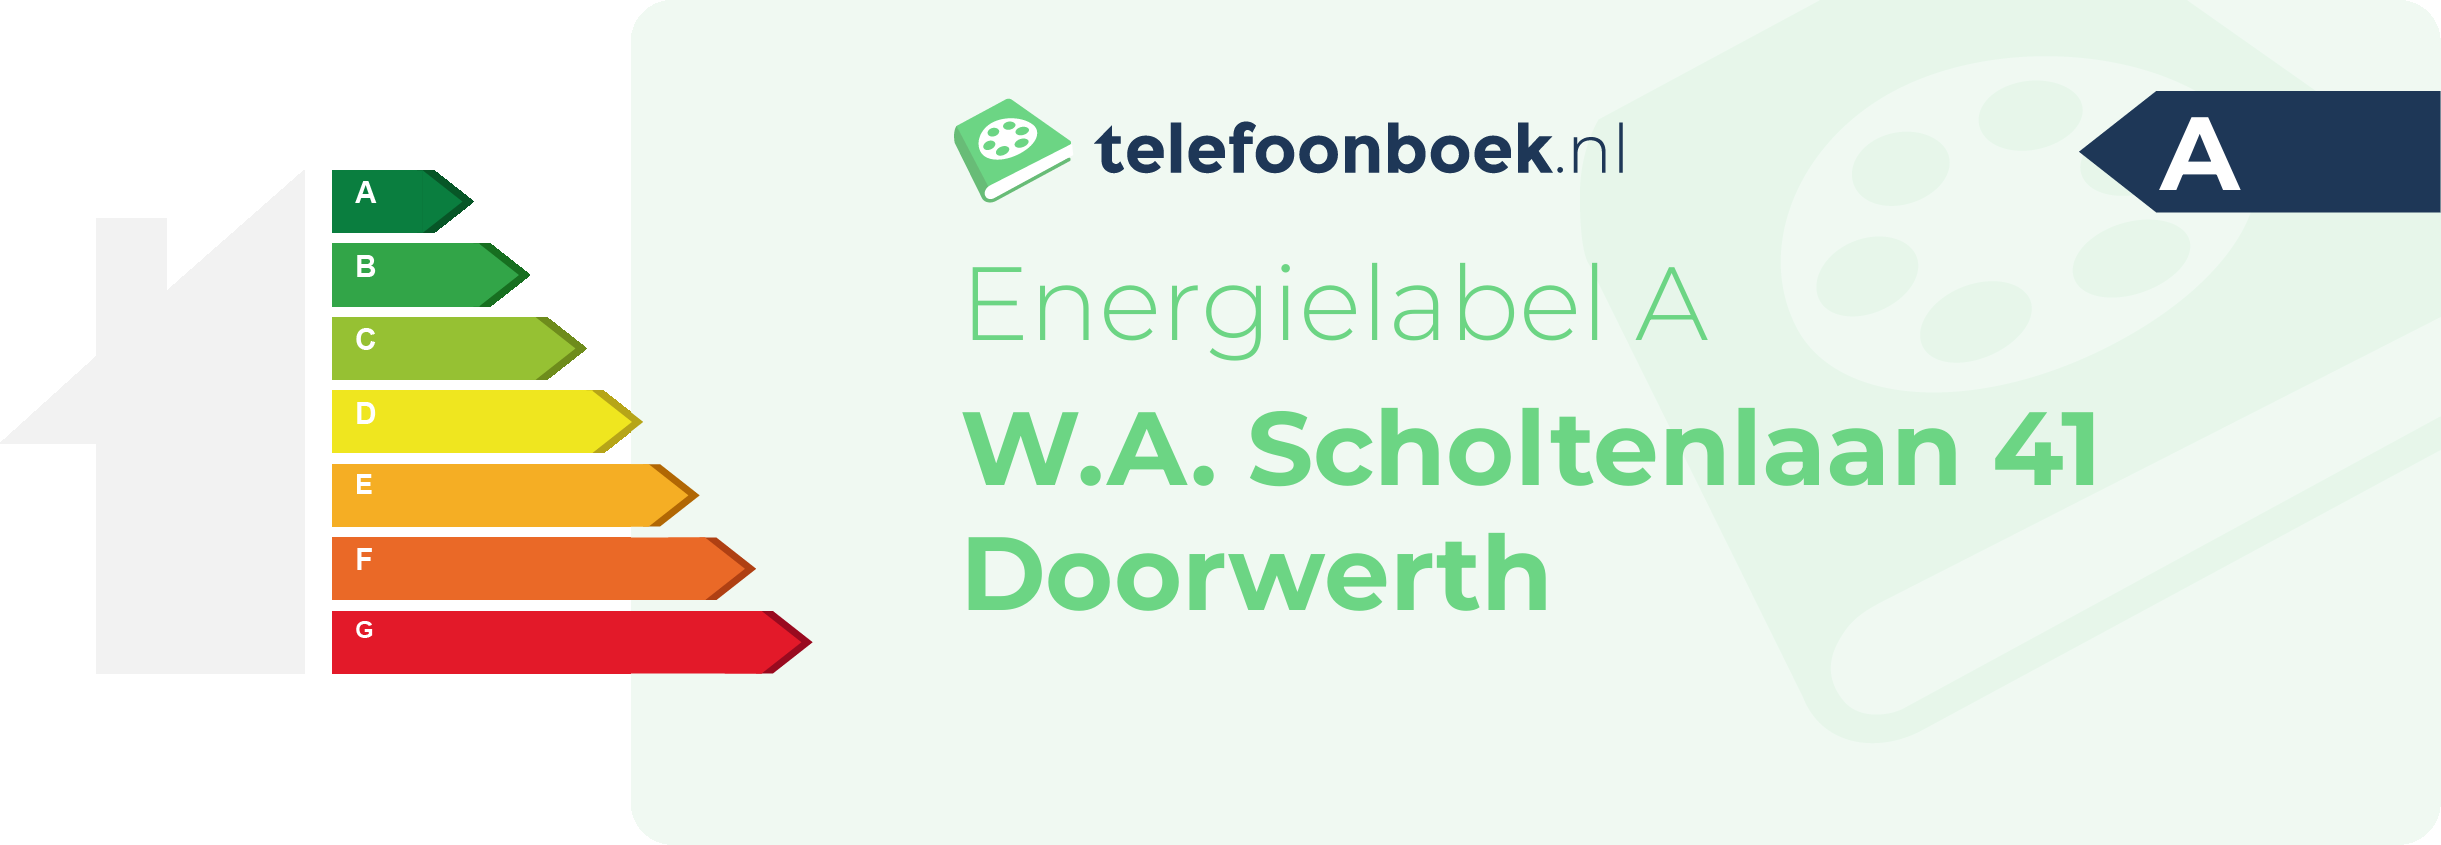 Energielabel W.A. Scholtenlaan 41 Doorwerth